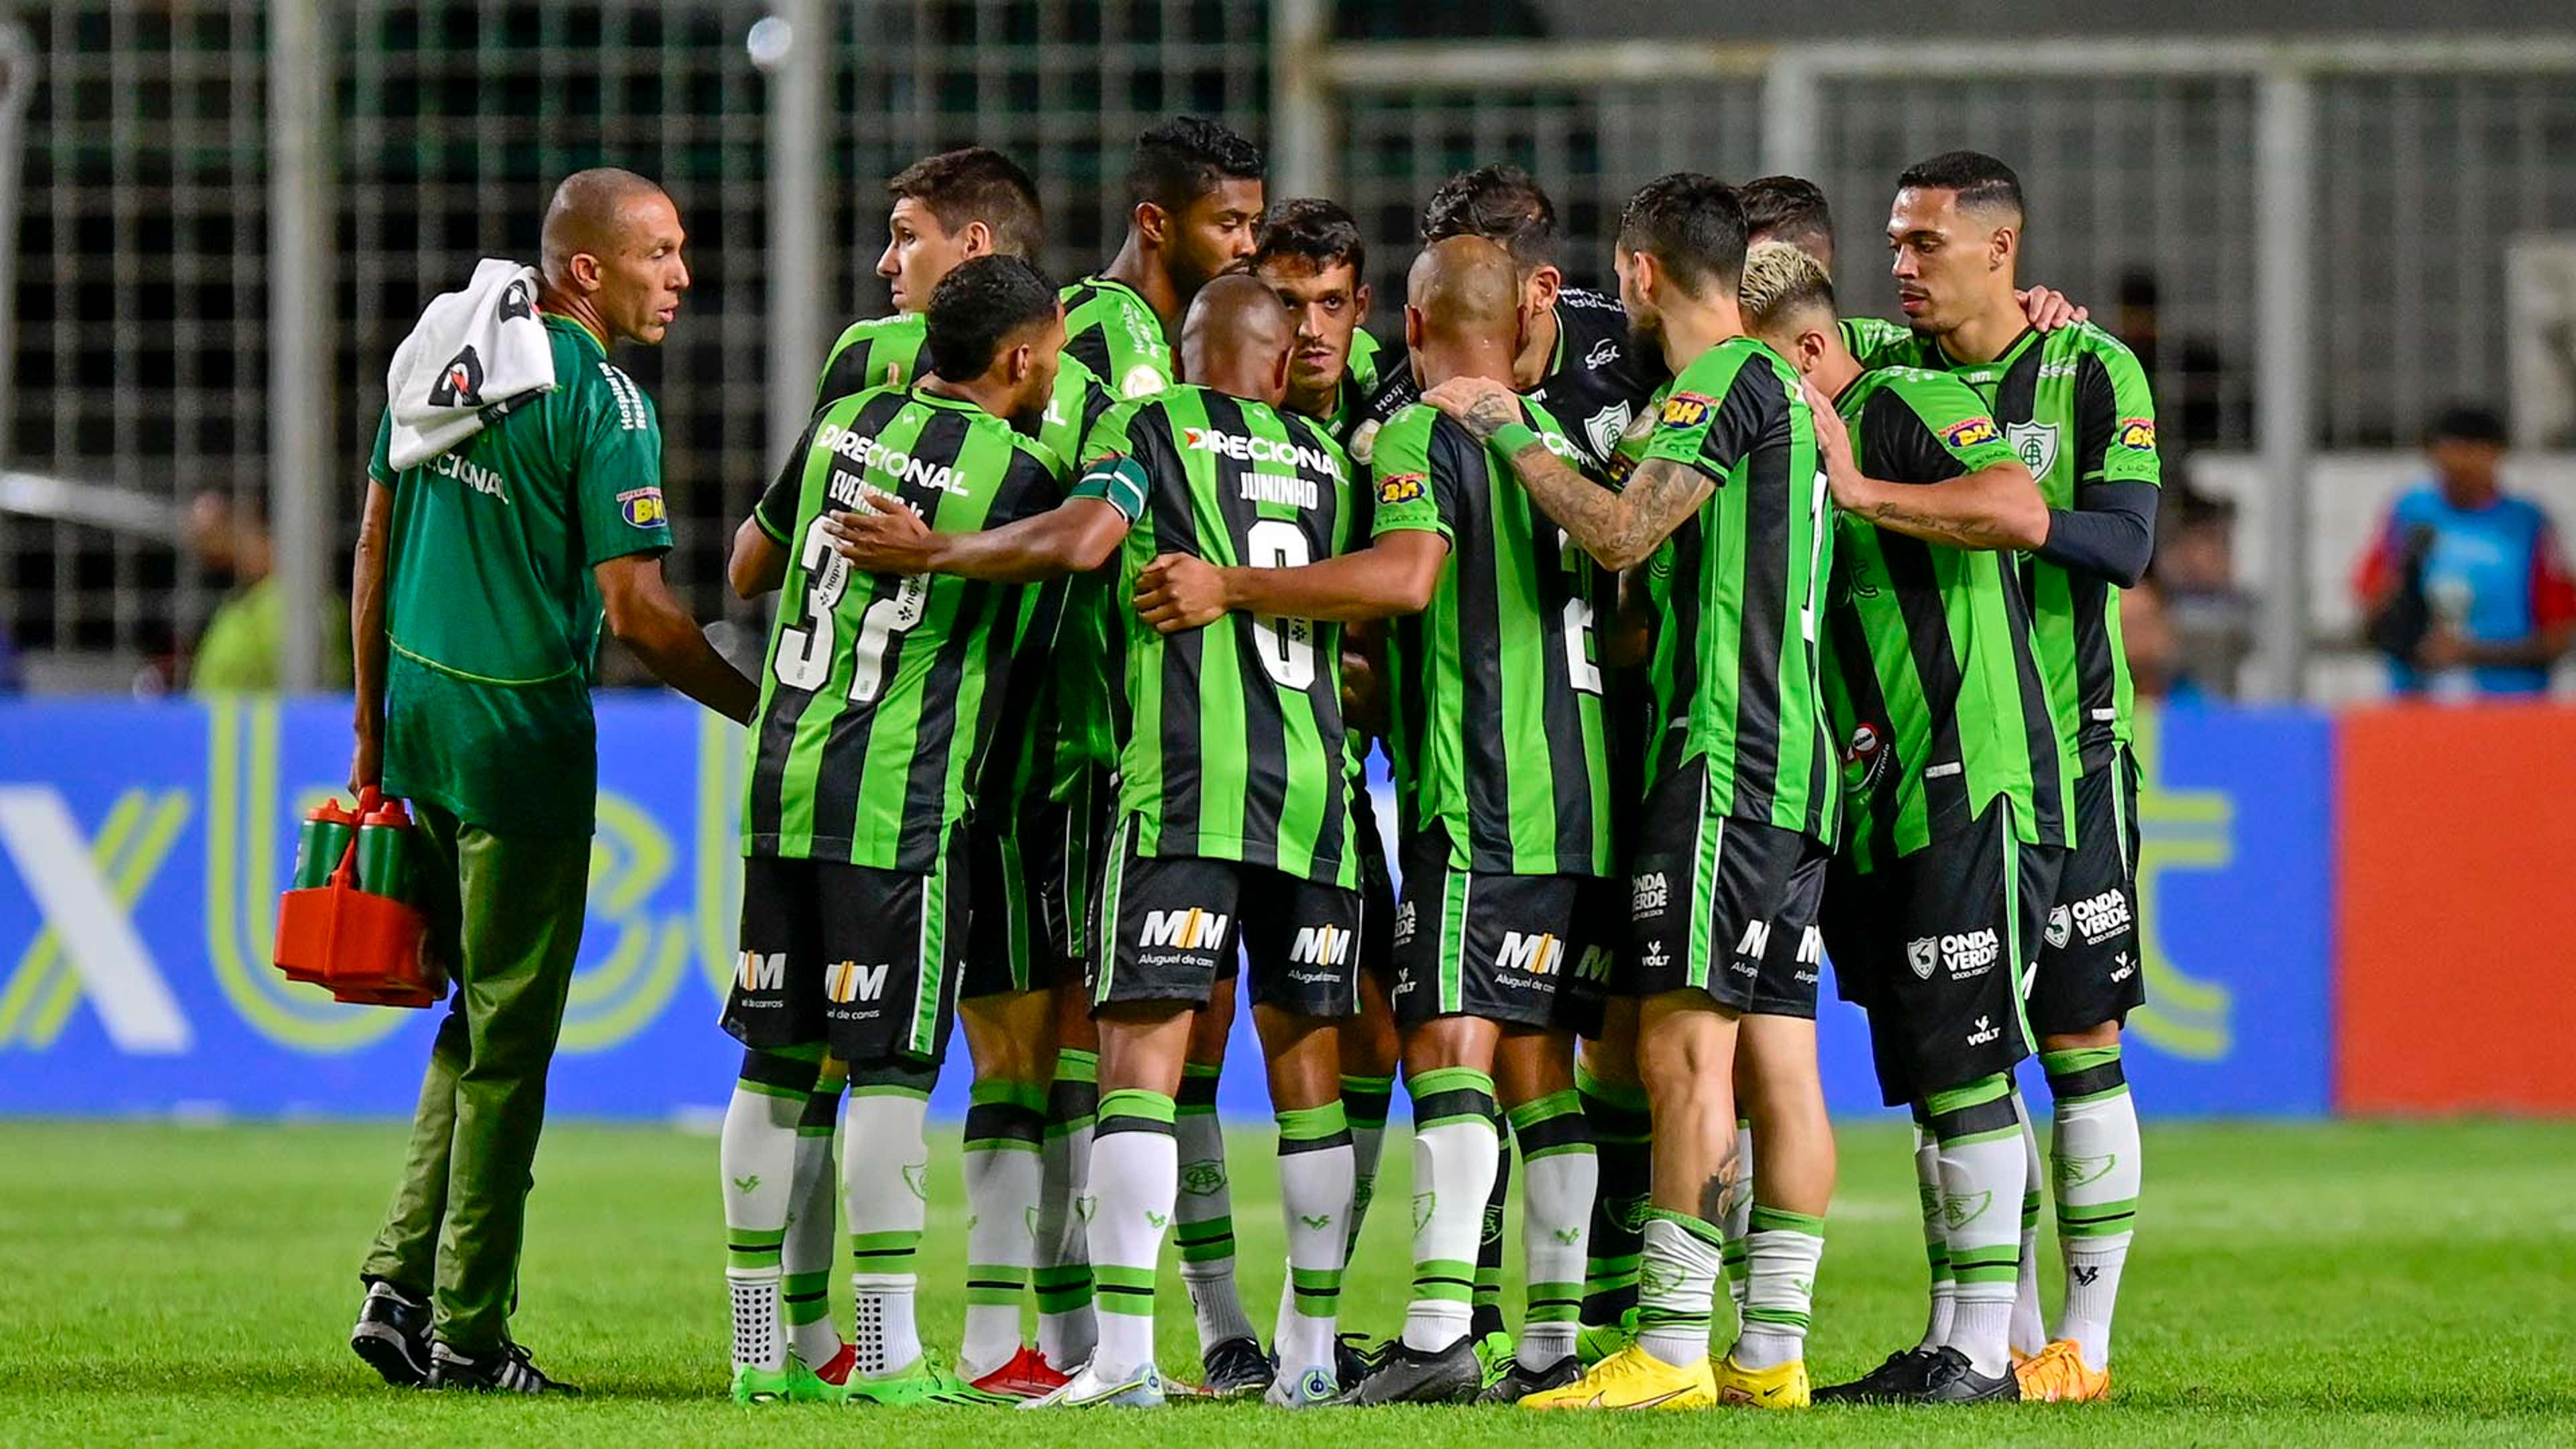 Tombense vs Atlético-GO: A Clash of Minas Gerais and Goiás Football Powerhouses